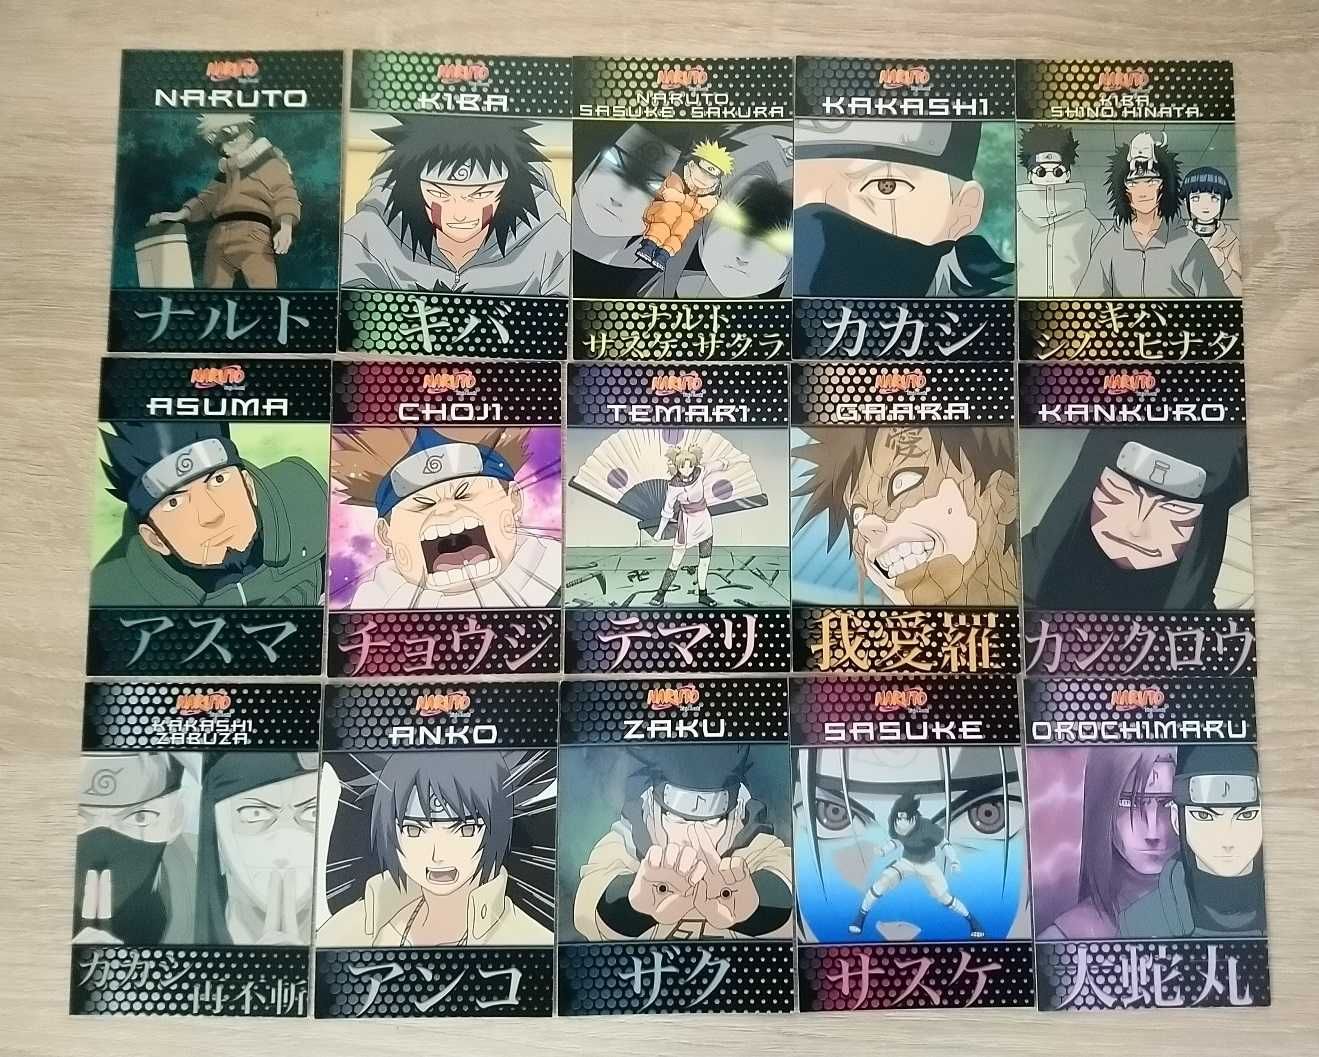 Karty Naruto Panini zestaw 68 kart